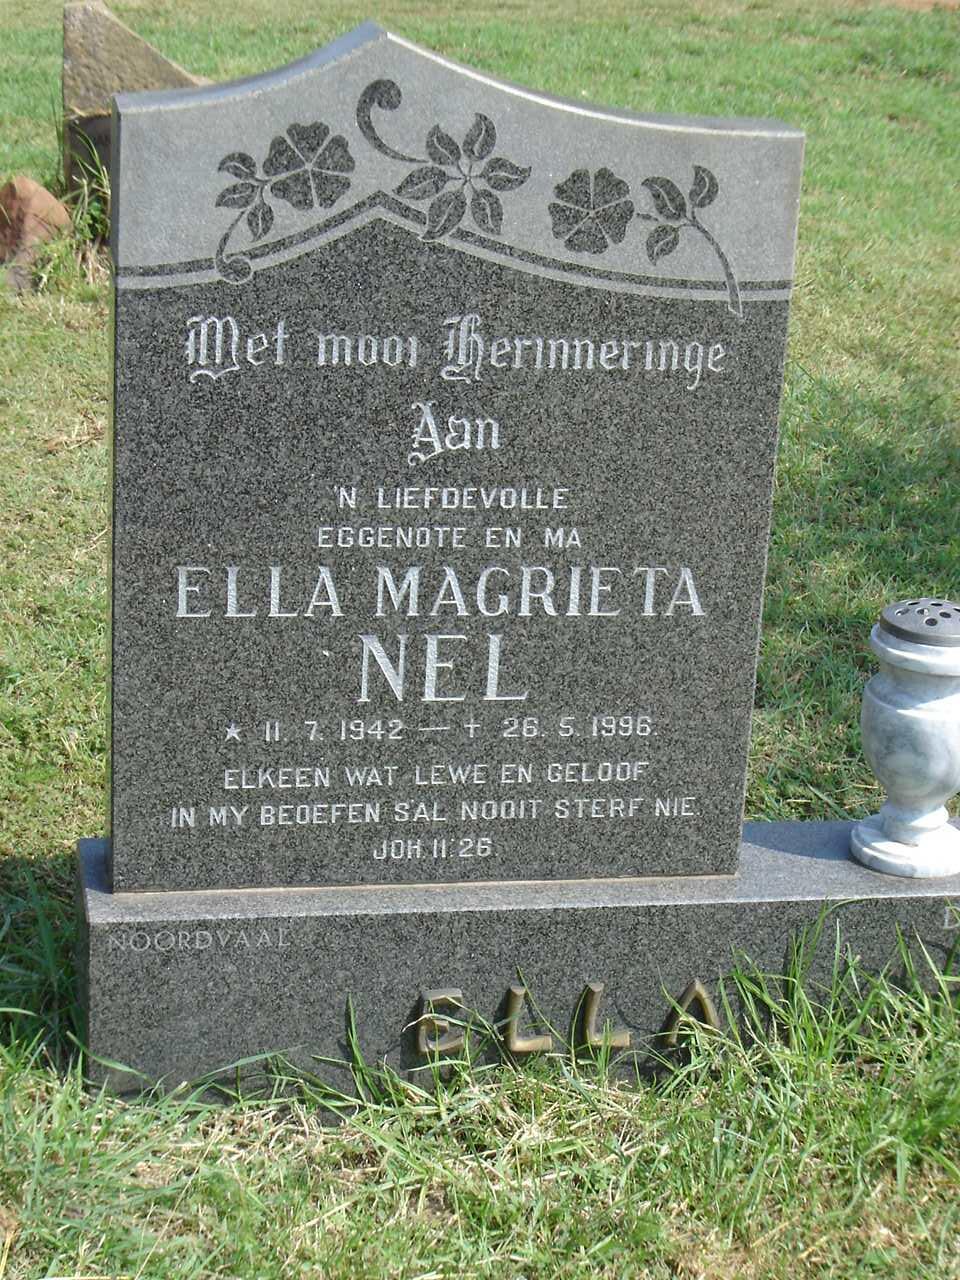 NEL Ella Magrietha 1942-1996